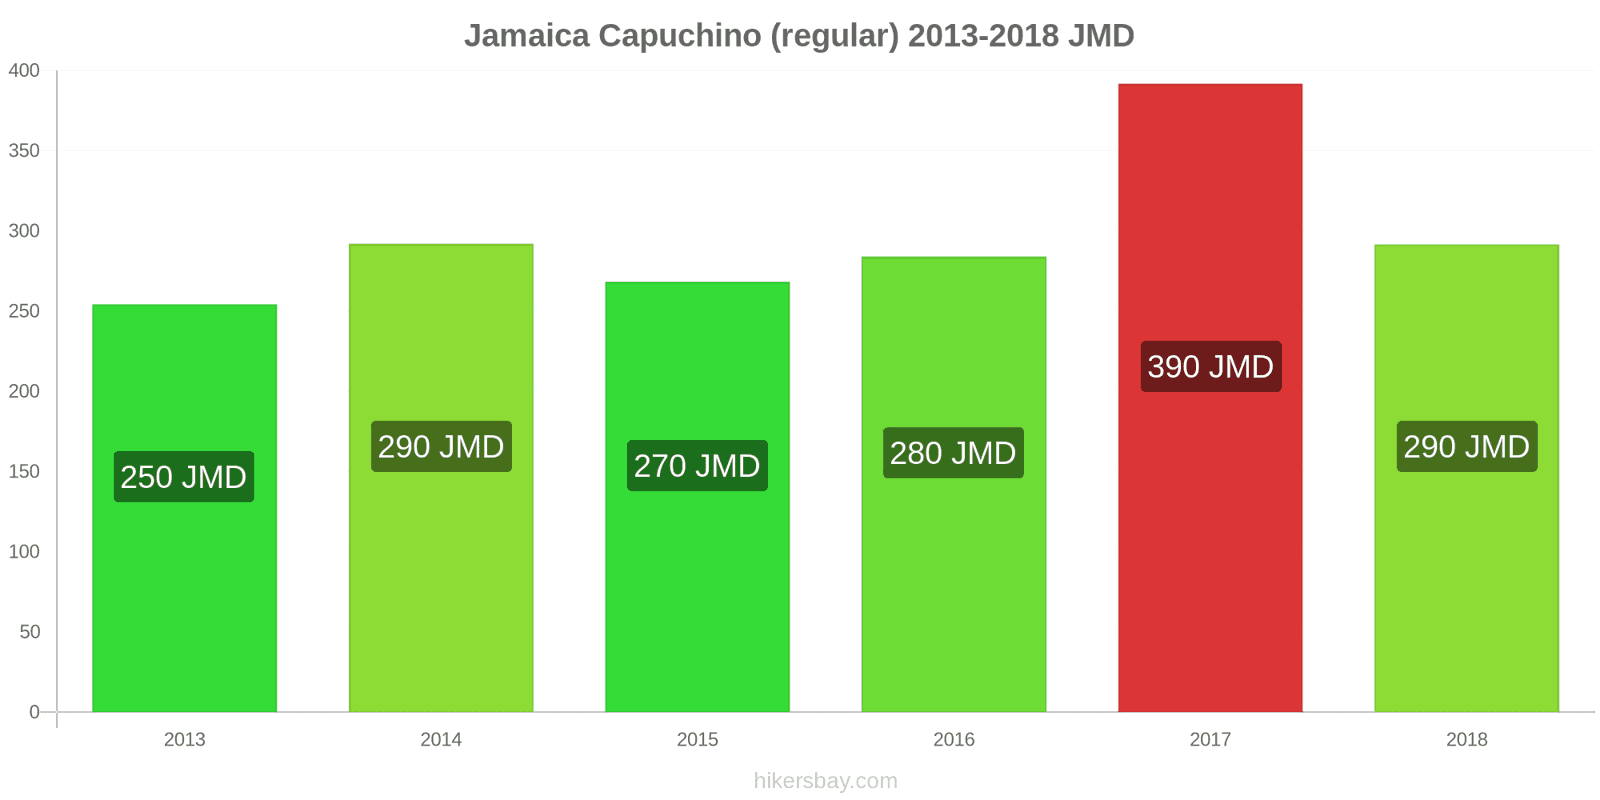 Jamaica cambios de precios Cappuccino hikersbay.com